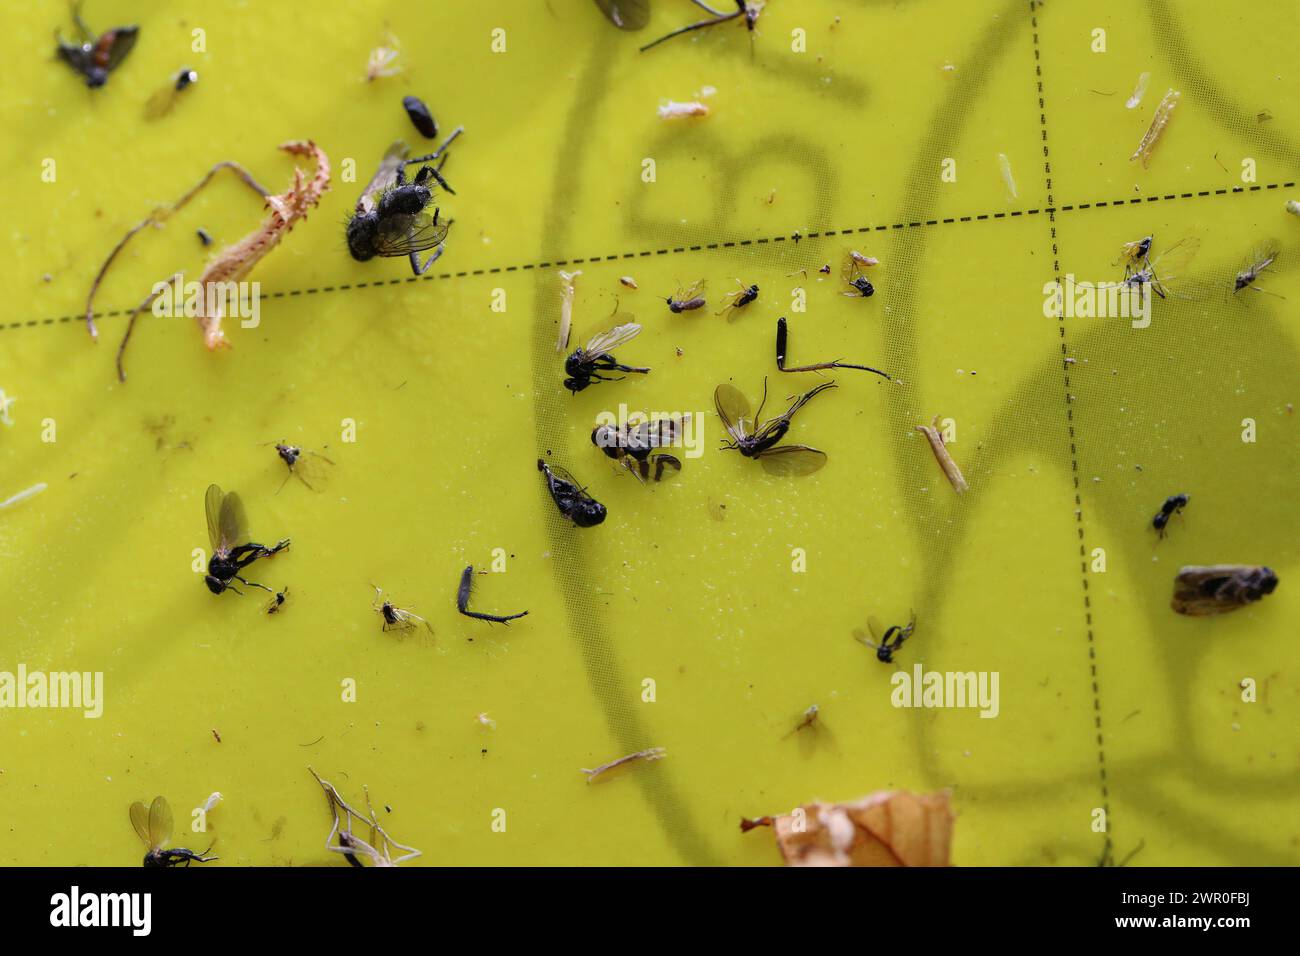 Vue macro d'insectes collés à un piège collant jaune, parmi lesquels la mouche européenne des cerises (Rhagoletis cerasi). Banque D'Images